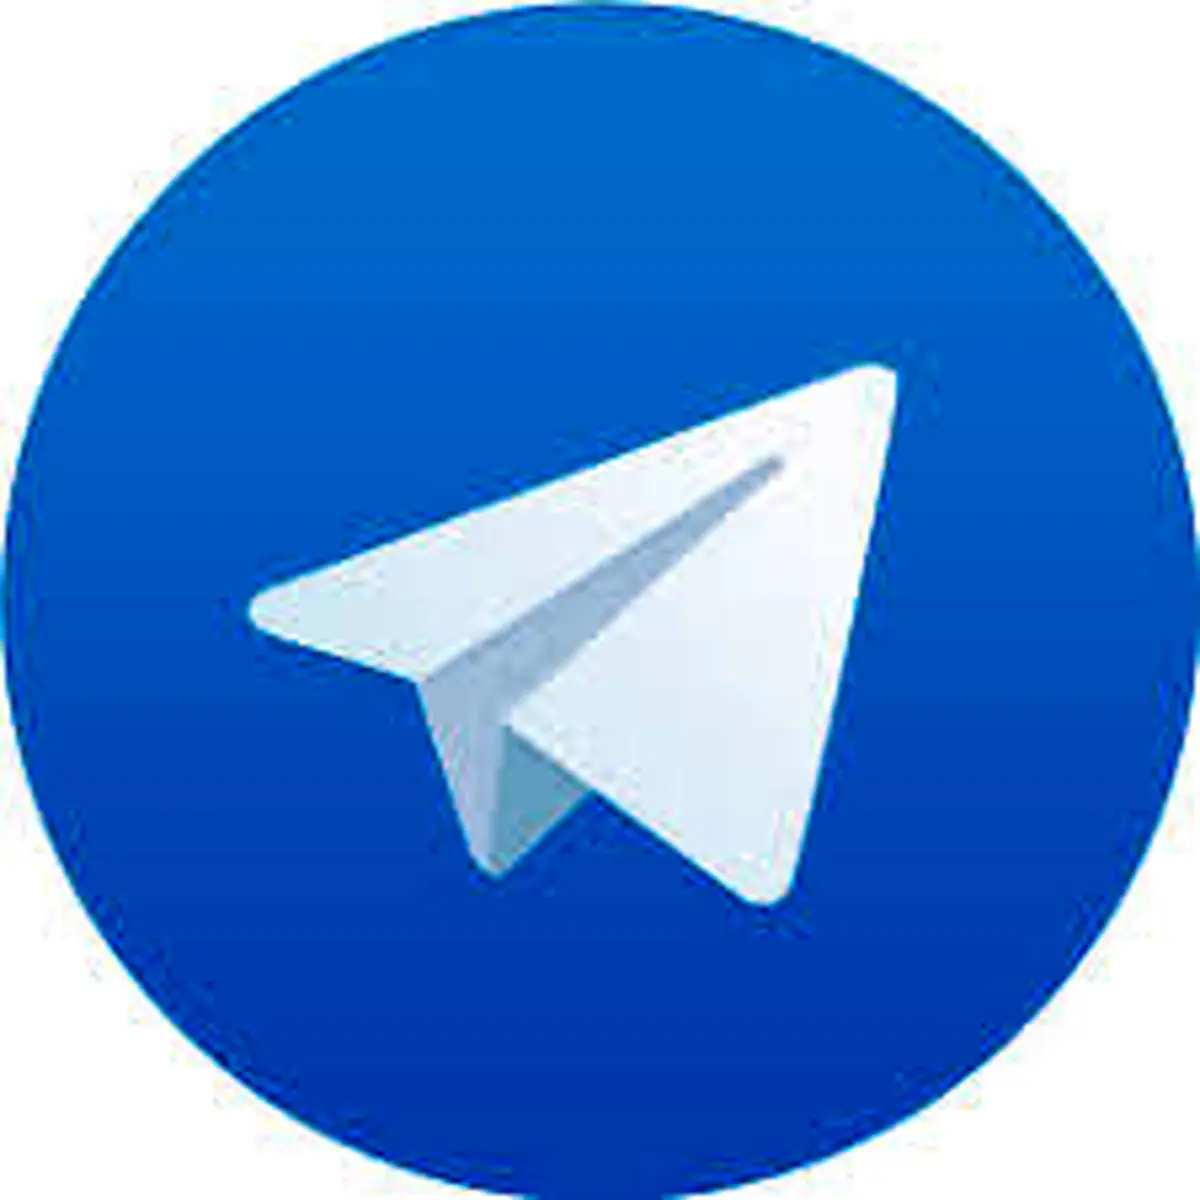 آیا چک کردن تلگرام همسر کار درستی است؟